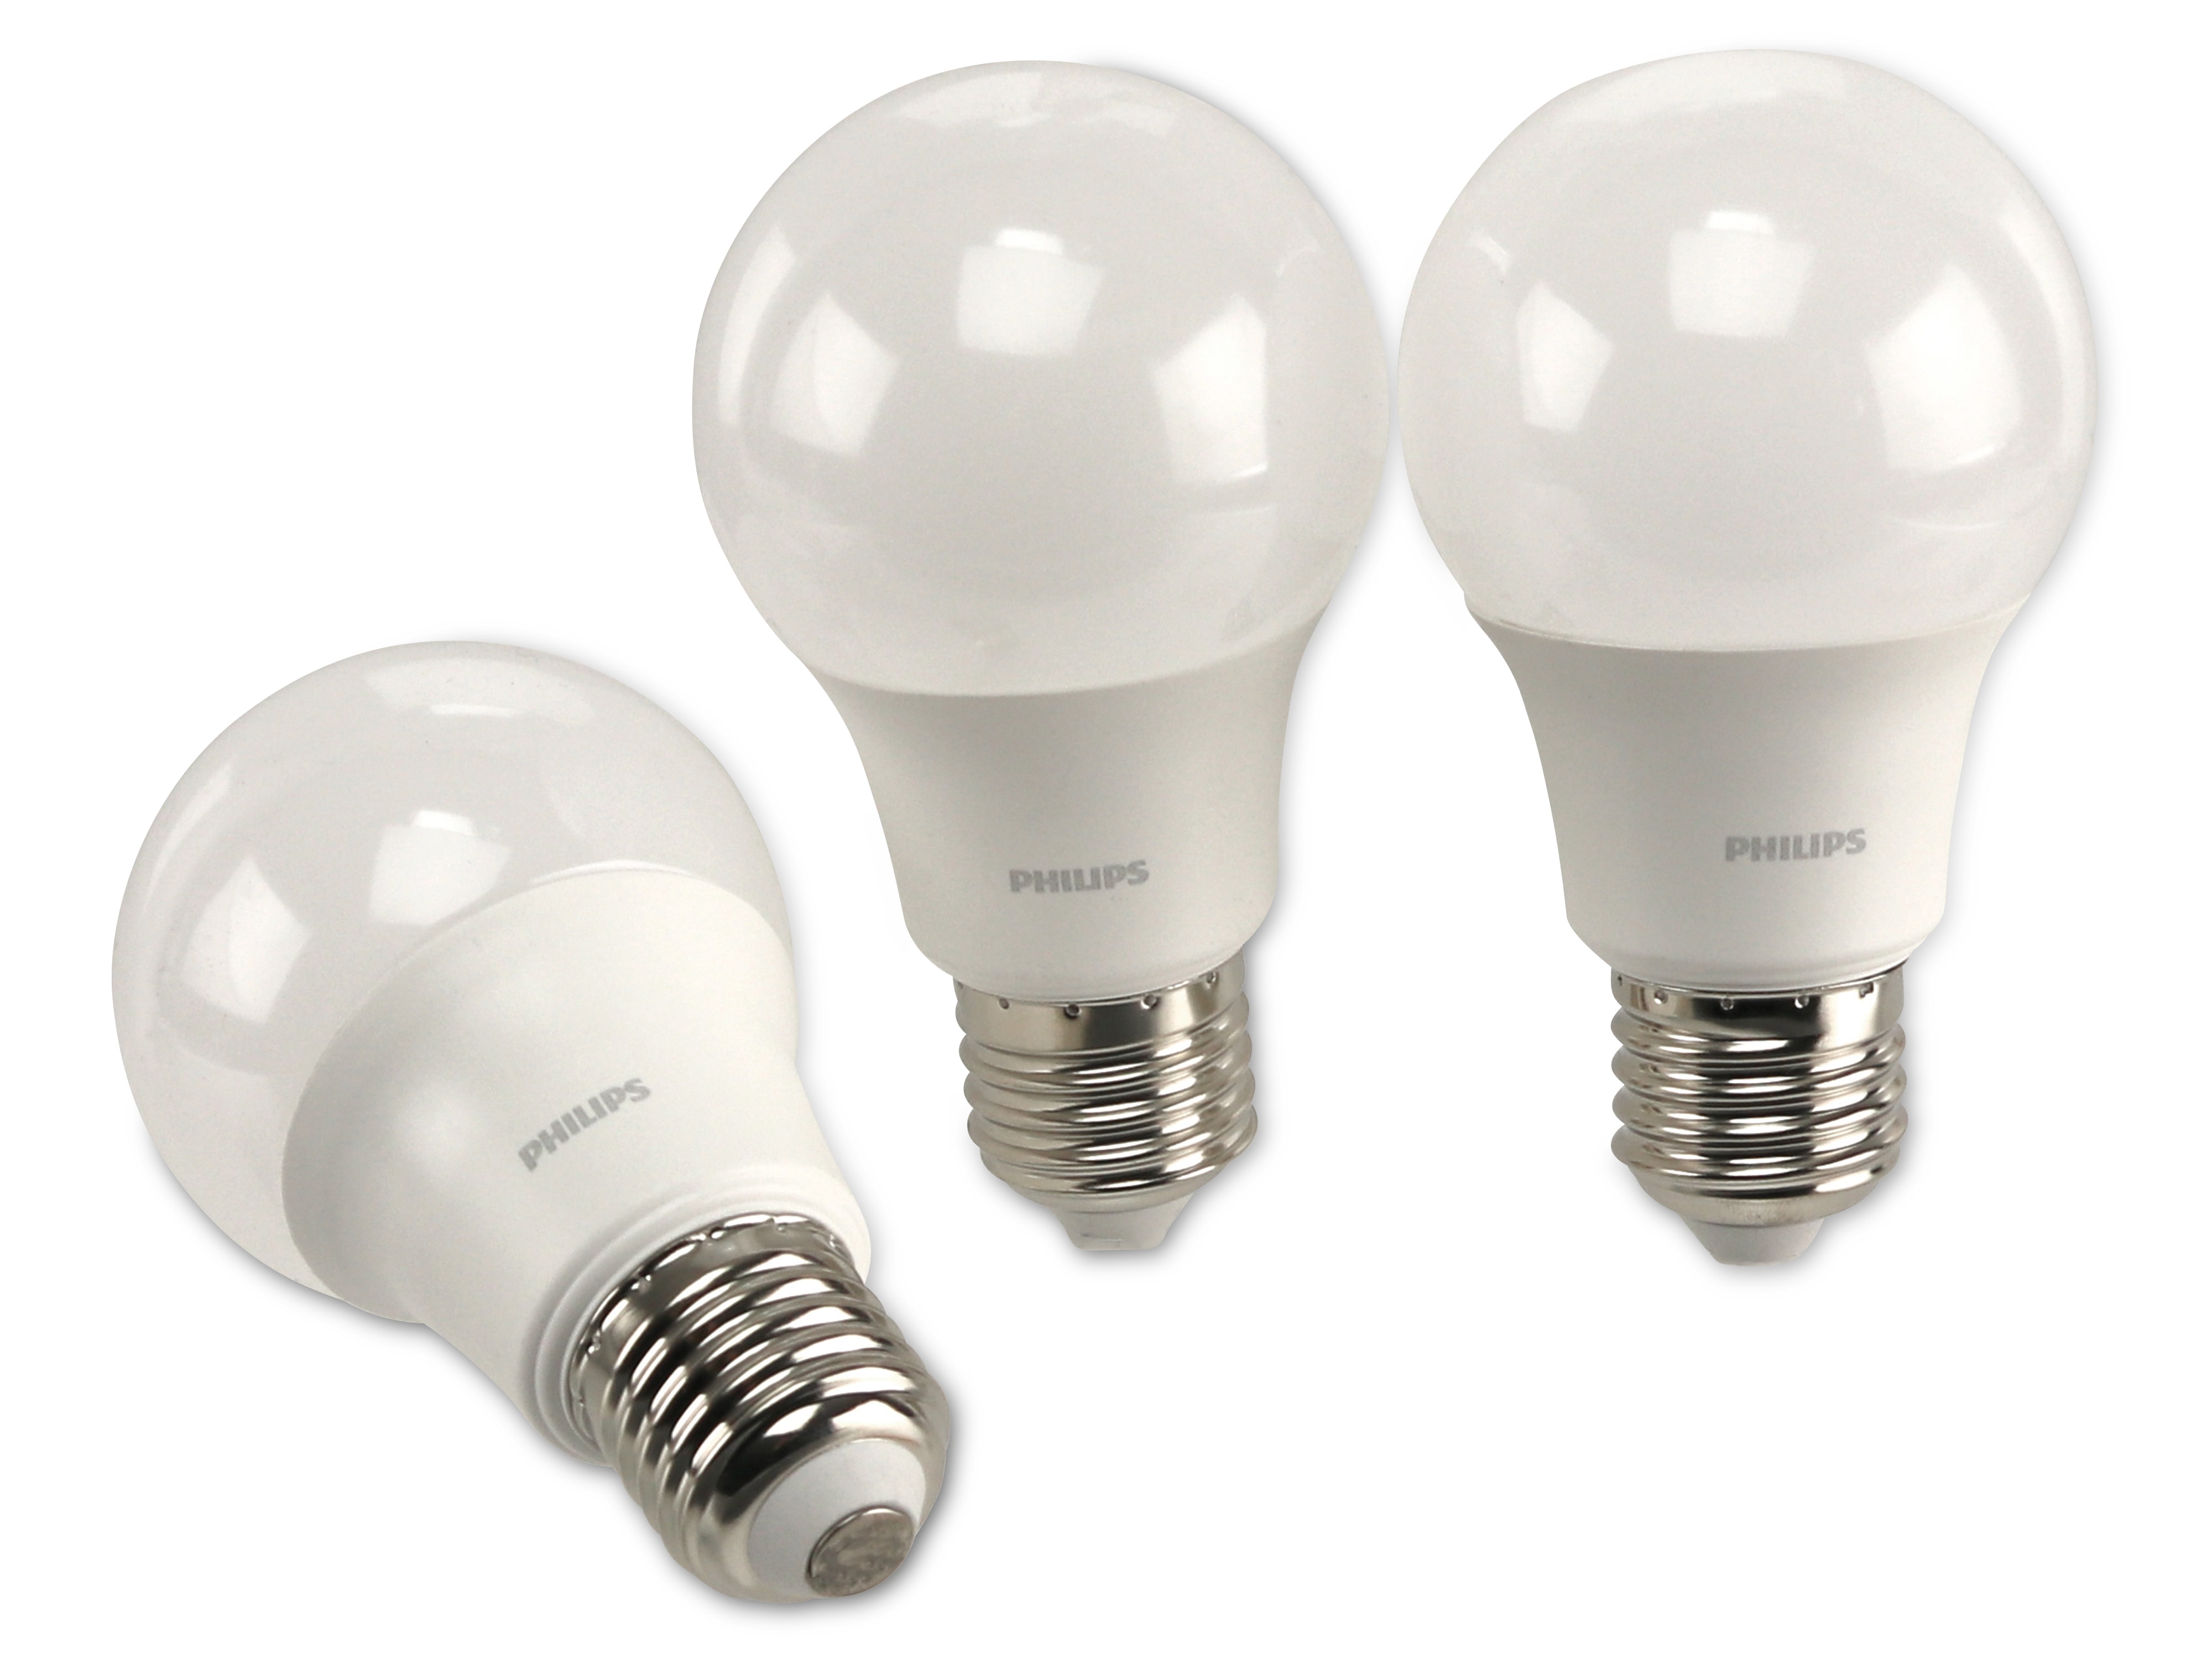 PHILIPS LED-Lampe E27, EEK: F, 5,5 W, warmweiß, 3er-Set